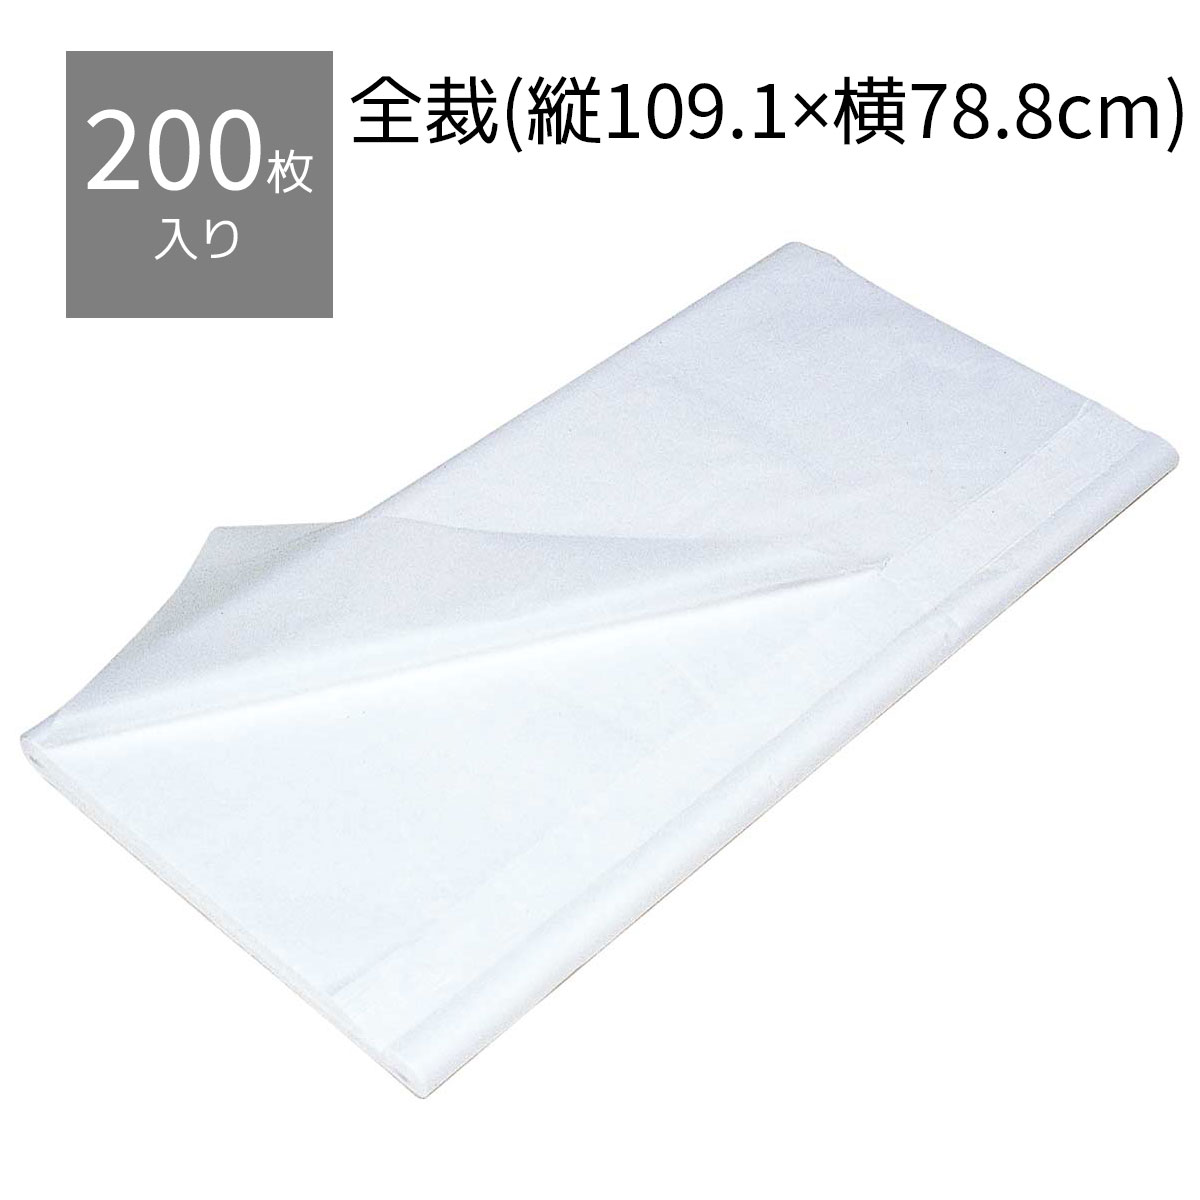 【200枚】薄葉紙 白 全判 79×109cm商品を保護するためのインナーラップとして最適な薄葉紙で ...